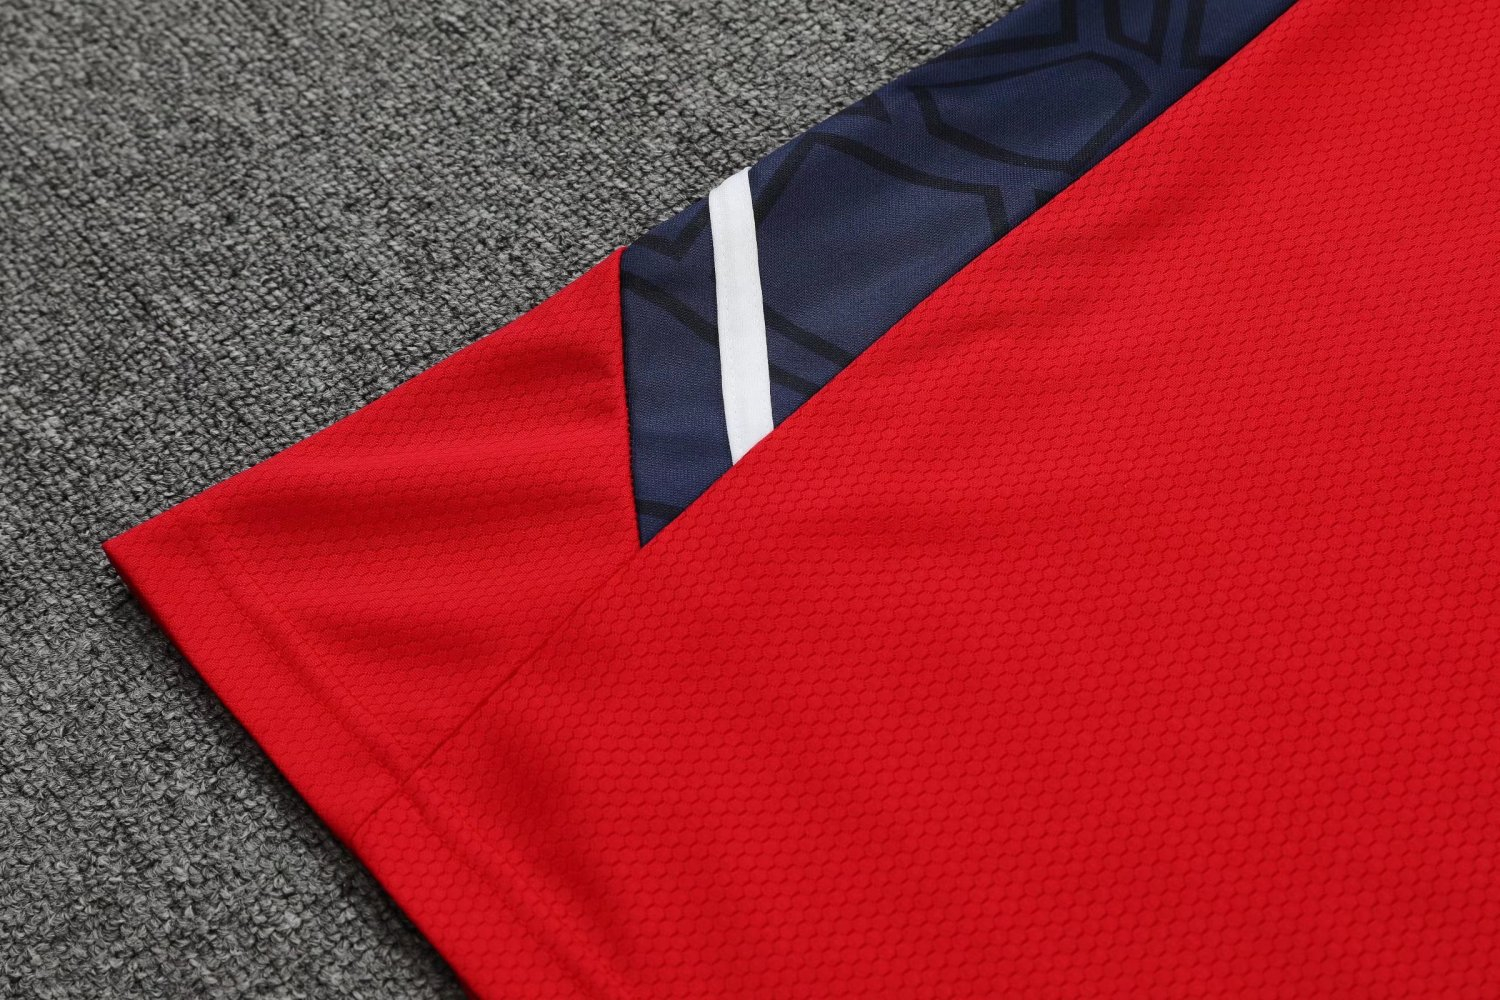 22-23 Arsenal Red Soccer Football Training Kit (Singlet + Shorts) Man